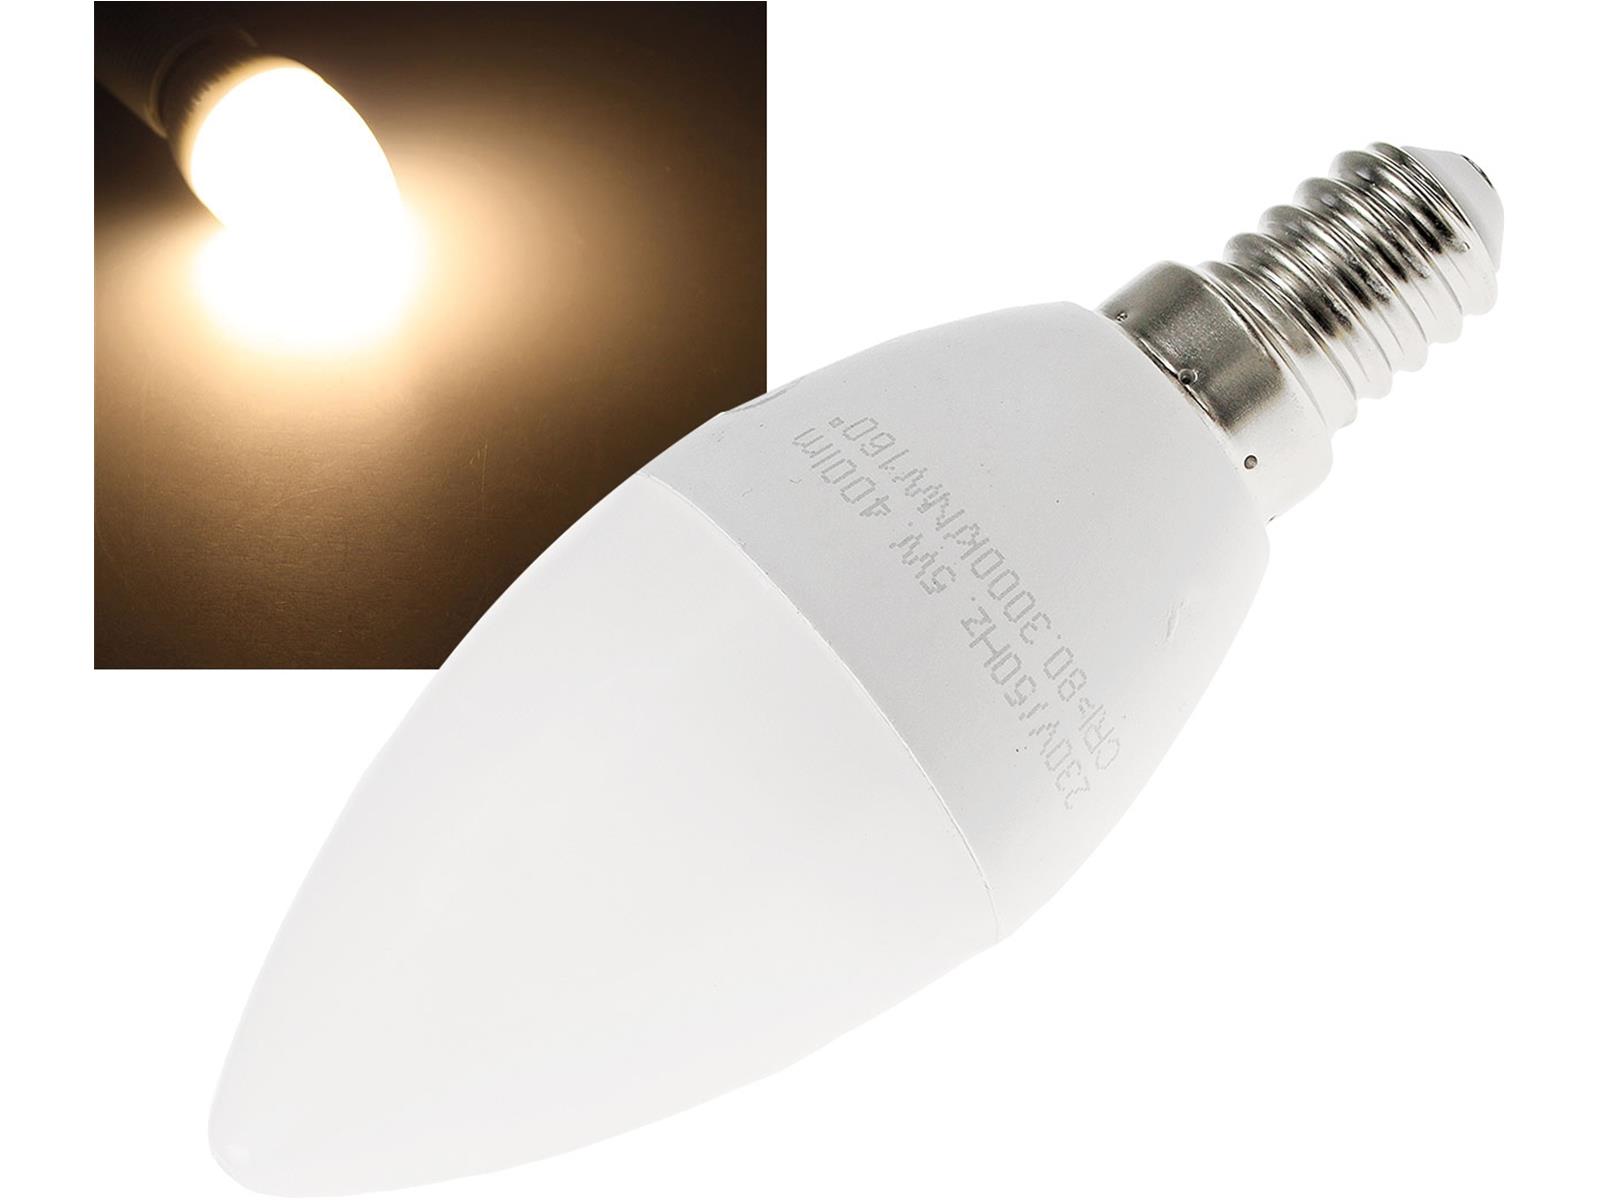 LED Kerzenlampe E14 "K50" warmweiß3000k, 400lm, 230V/5W